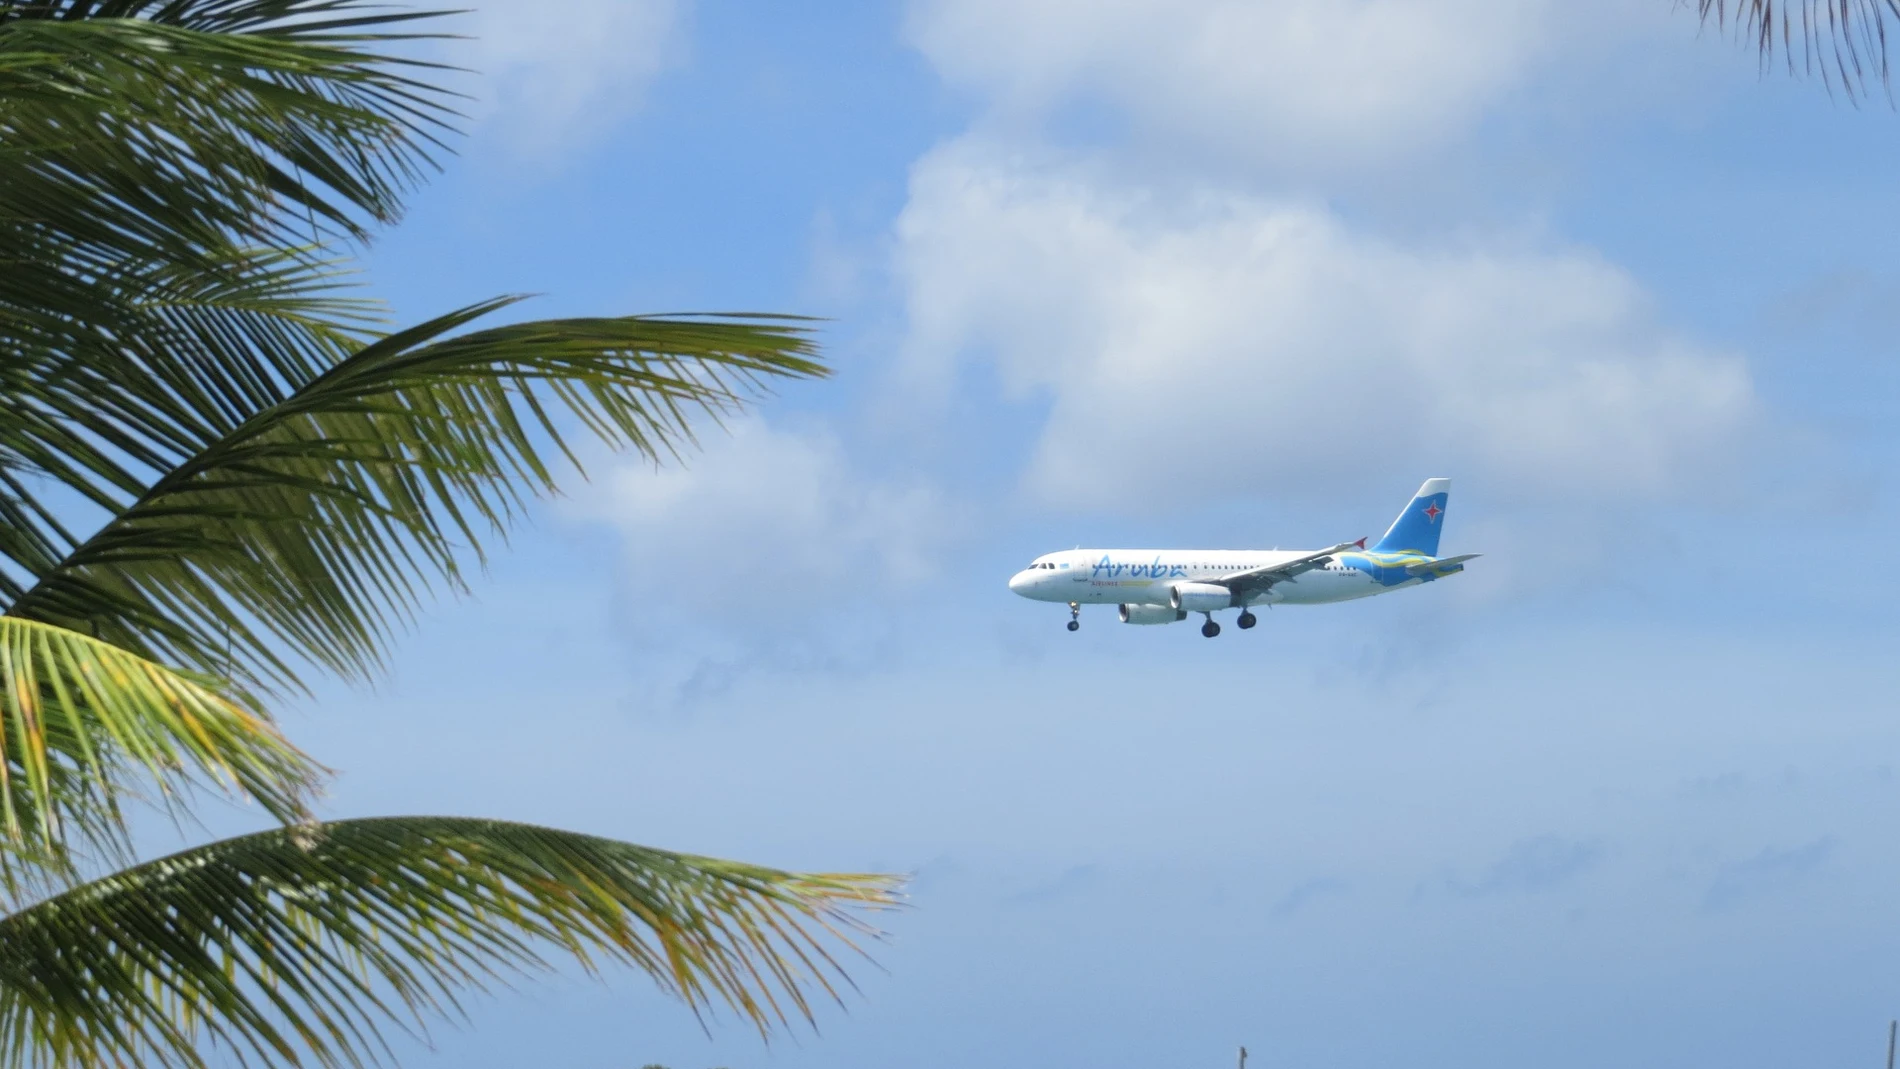 Imagen de un avión volando cerca de una playa.